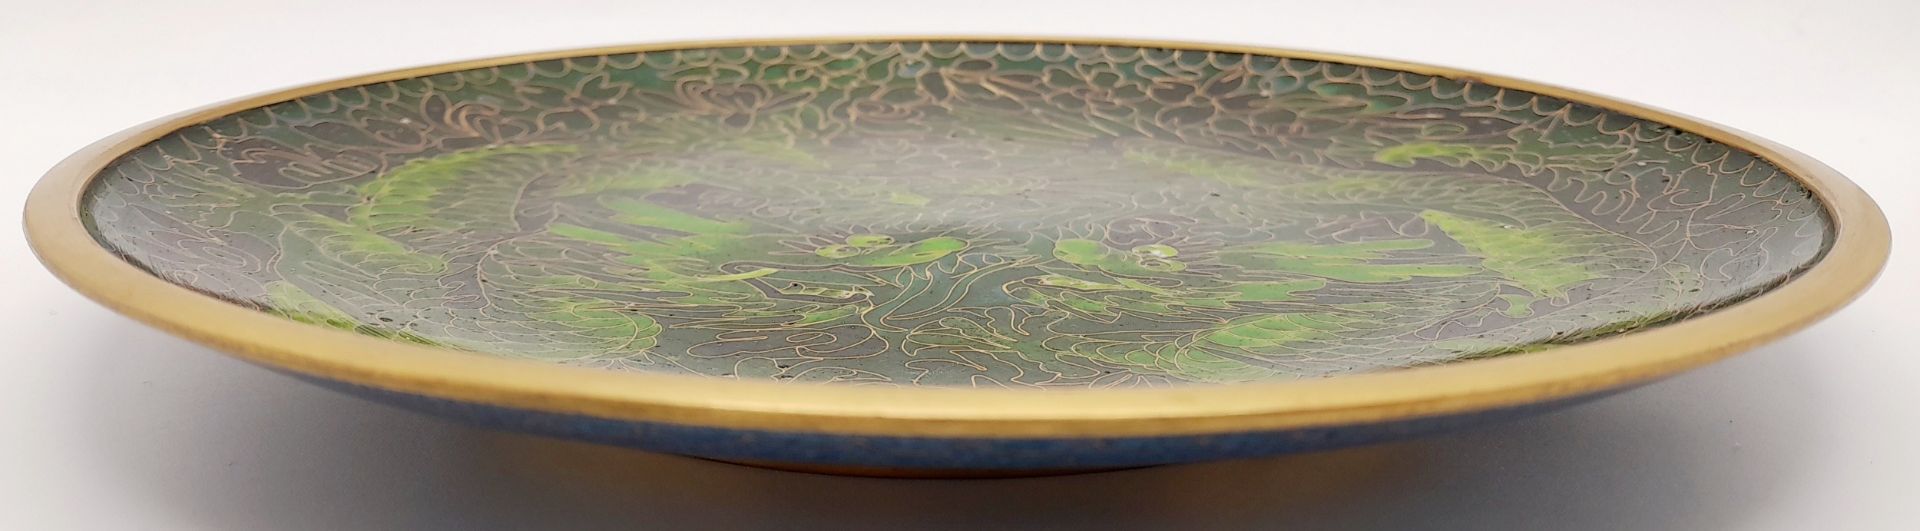 A Vintage Chinese Cloisonné Enamel Plate. Dragon decoration. Markings on base. 23cm diameter. - Bild 4 aus 6